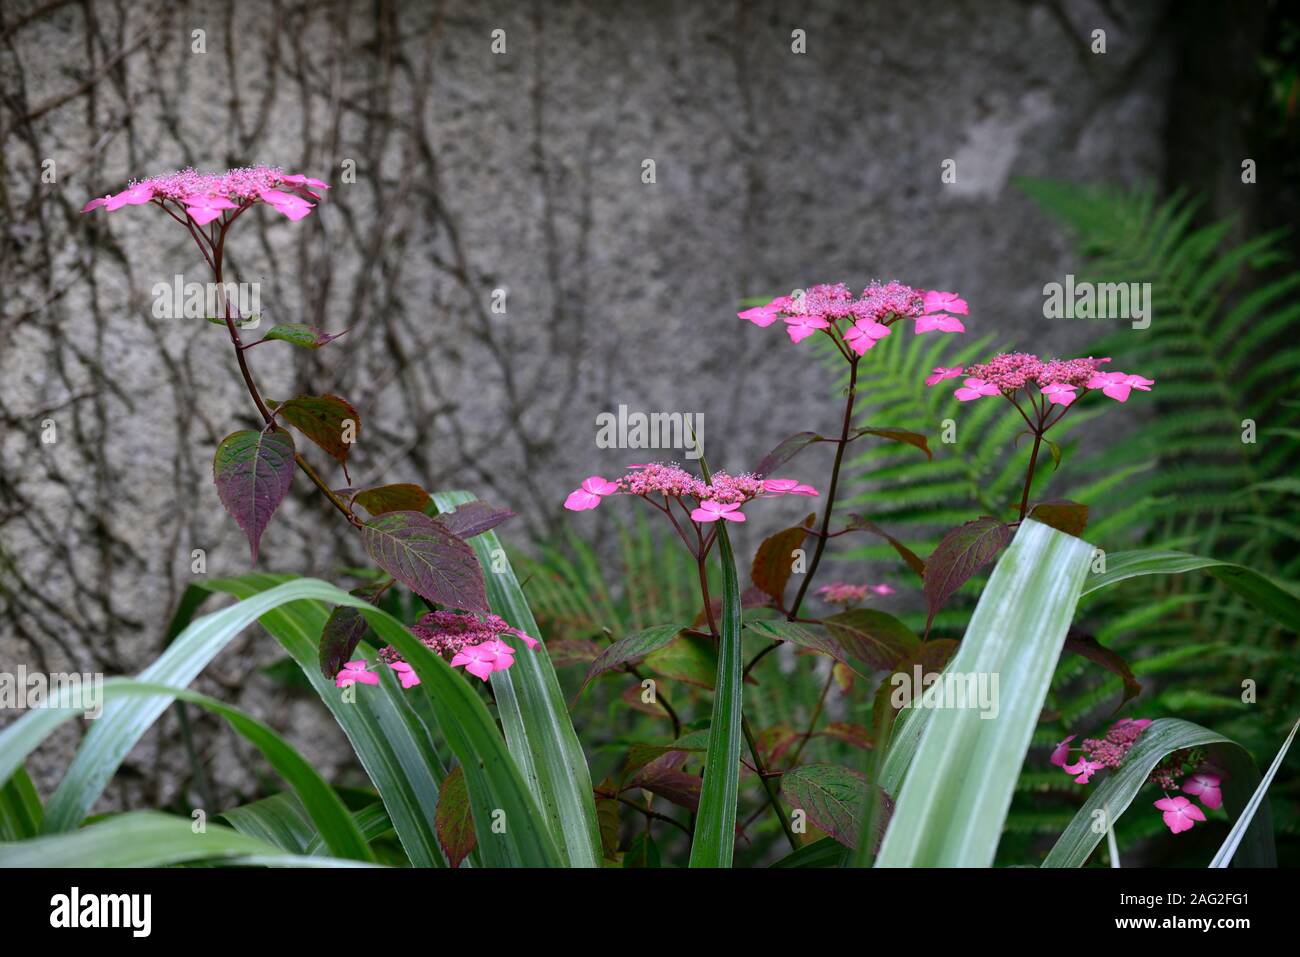 Astelia chathamica lancia d'argento,Hydrangea macrophylla,rosso,rosa,fiori,fiore,foglie,fogliame,giardino,giardino,RM Floral Foto Stock